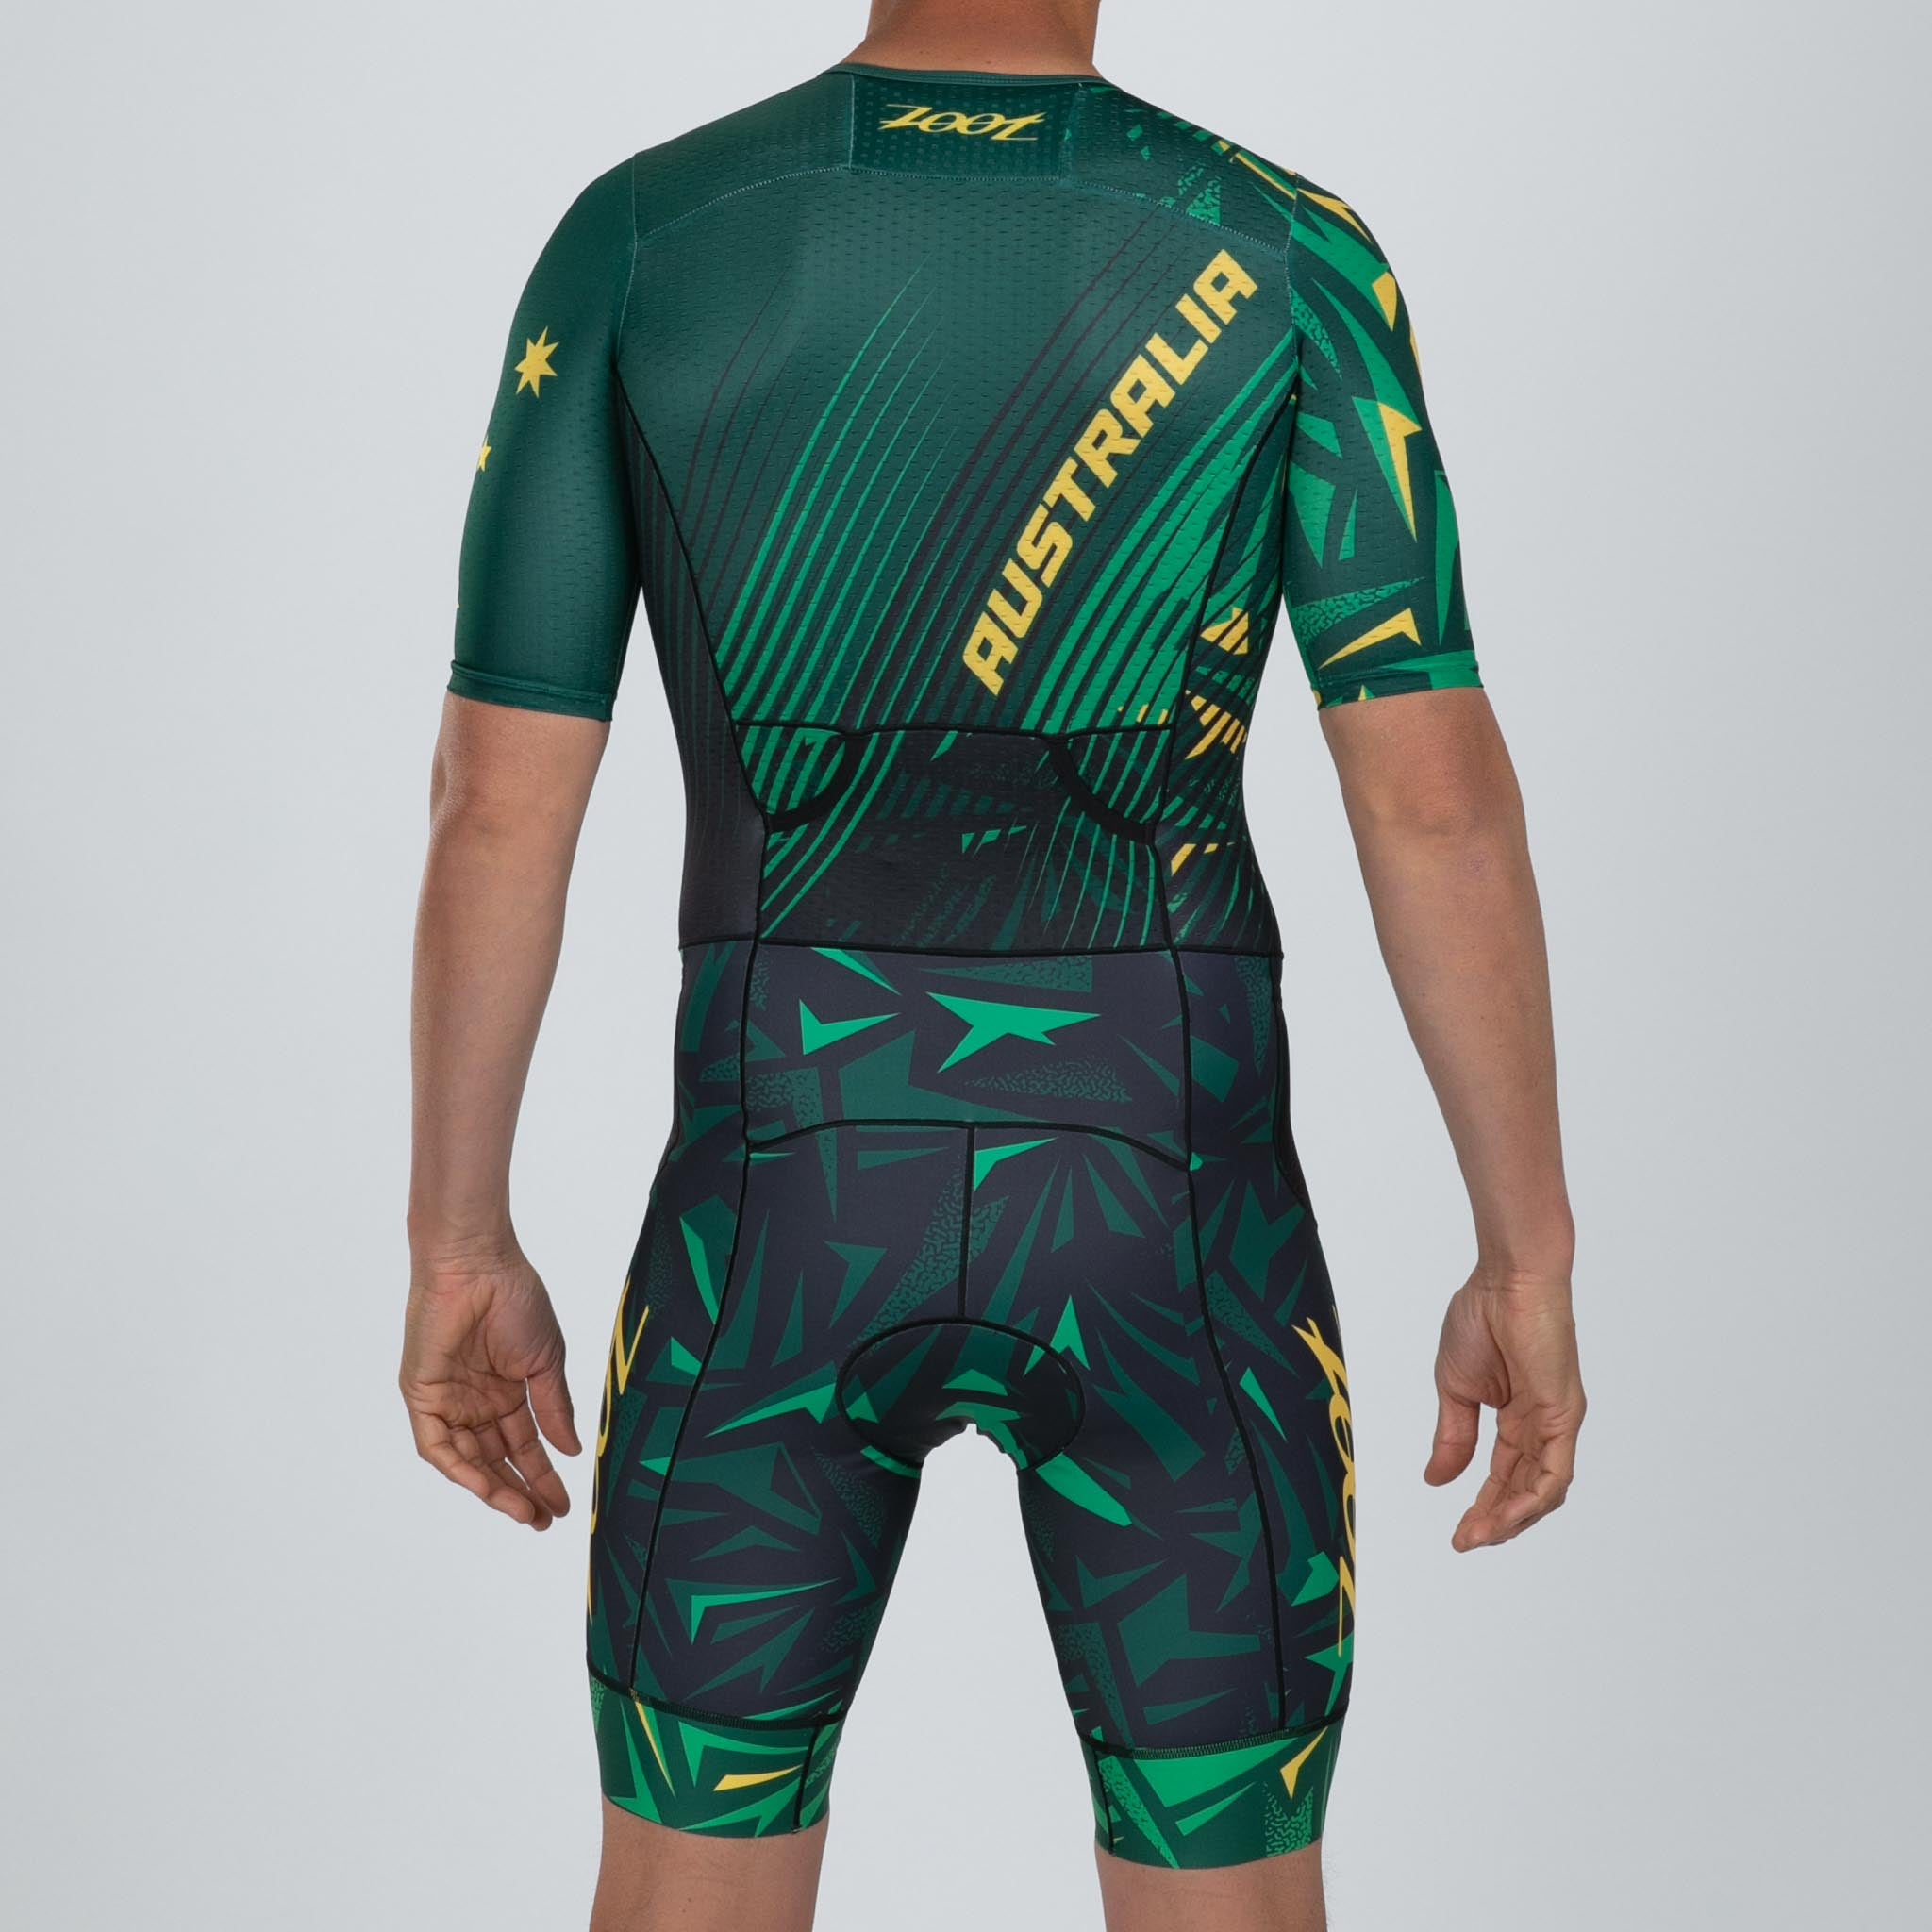 Zoot Sports TRI RACESUITS Men's Ltd Tri Aero Fz Racesuit - Australia